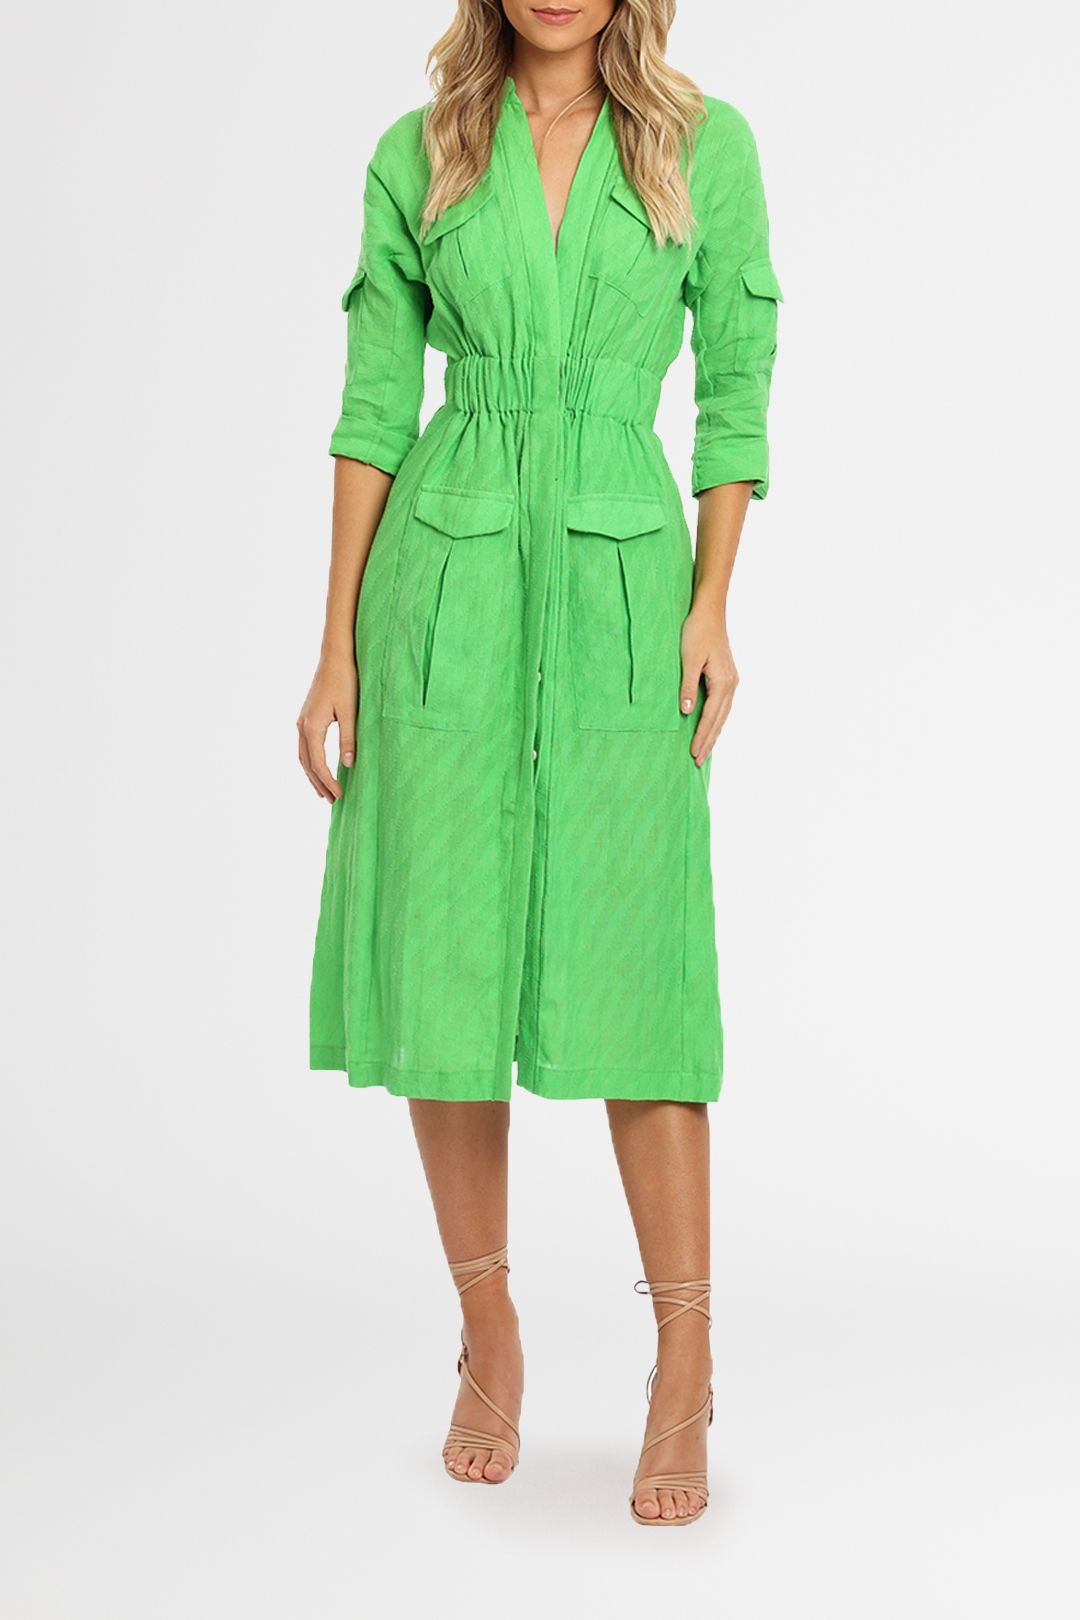 KITX Linen Safari Dress Green